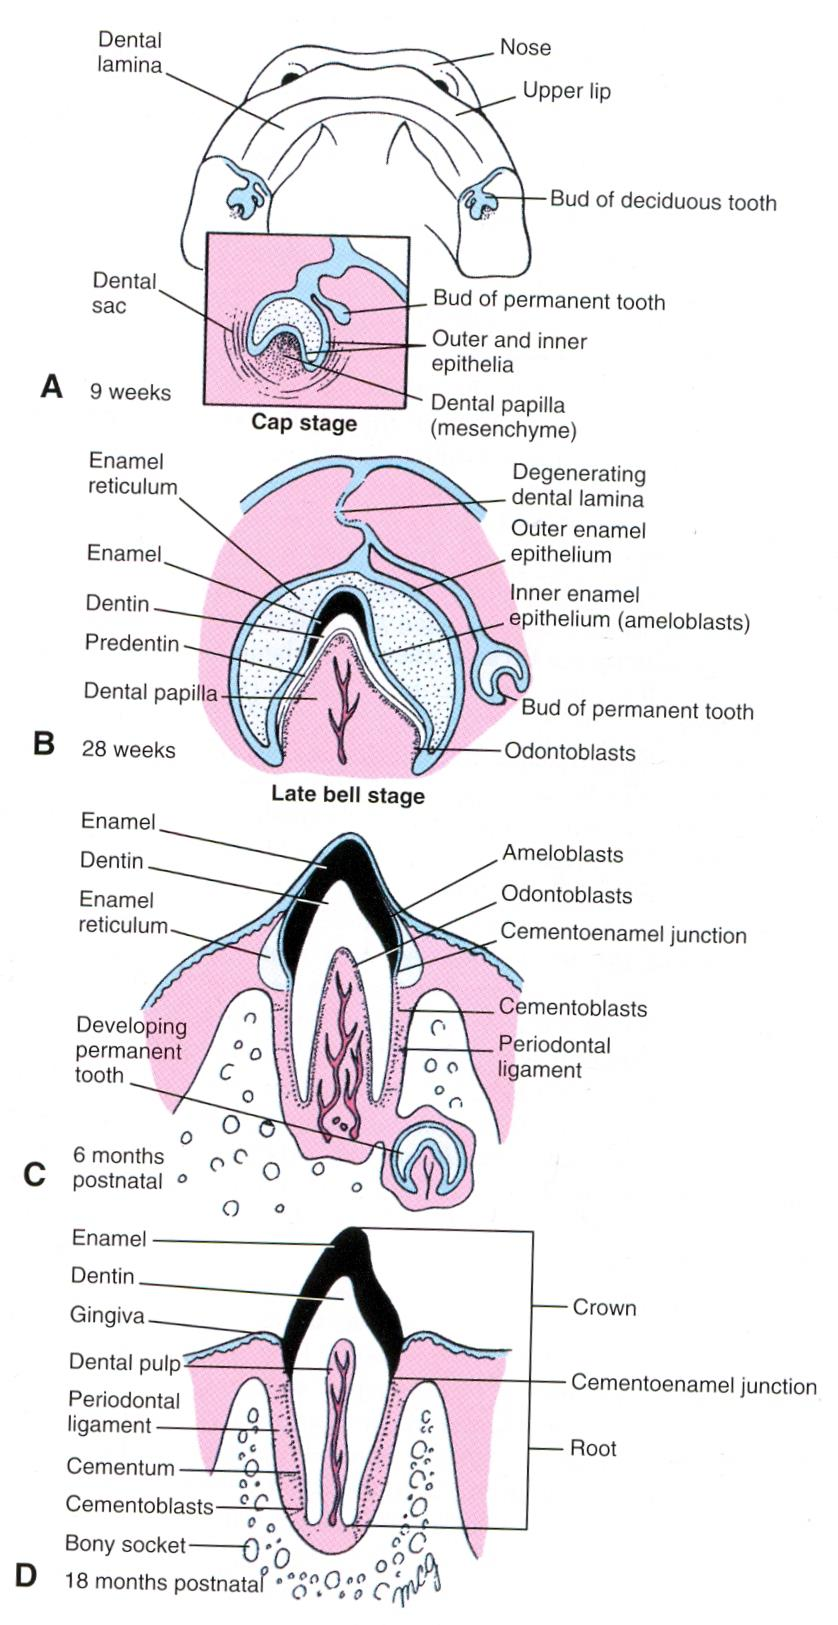 Vývoj zubů - interakce ektodermu s mezenchymem (mezenchym z oblasti neurální lišty) - 6ý týden (h) zubní lišta dentogingivální (lamina dentalis), prorůstáním ektodermu do hloubky mezenchymu - na